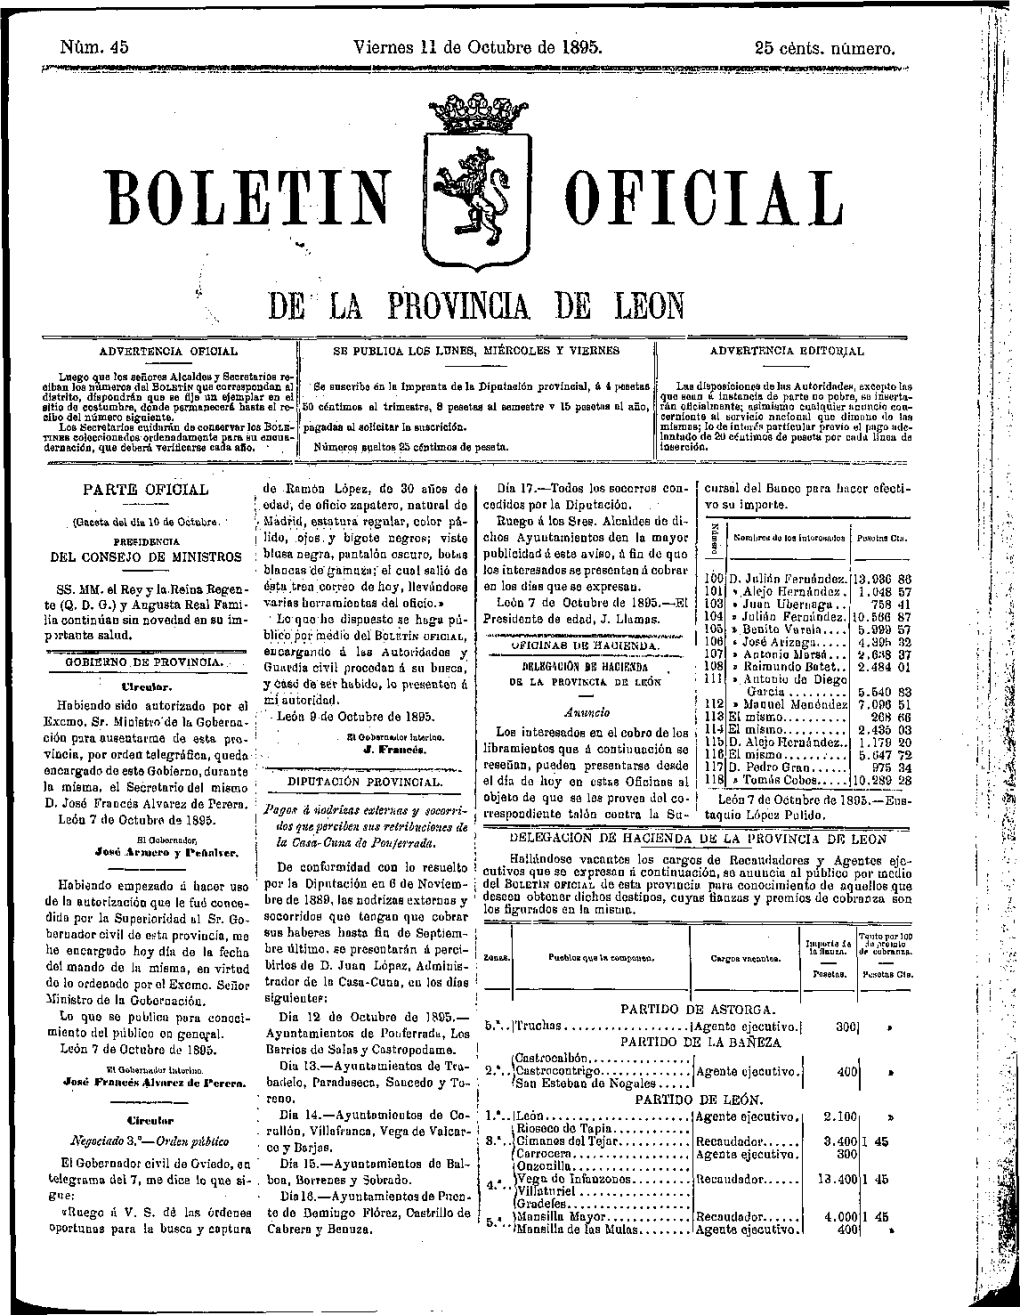 Boletin Oficial